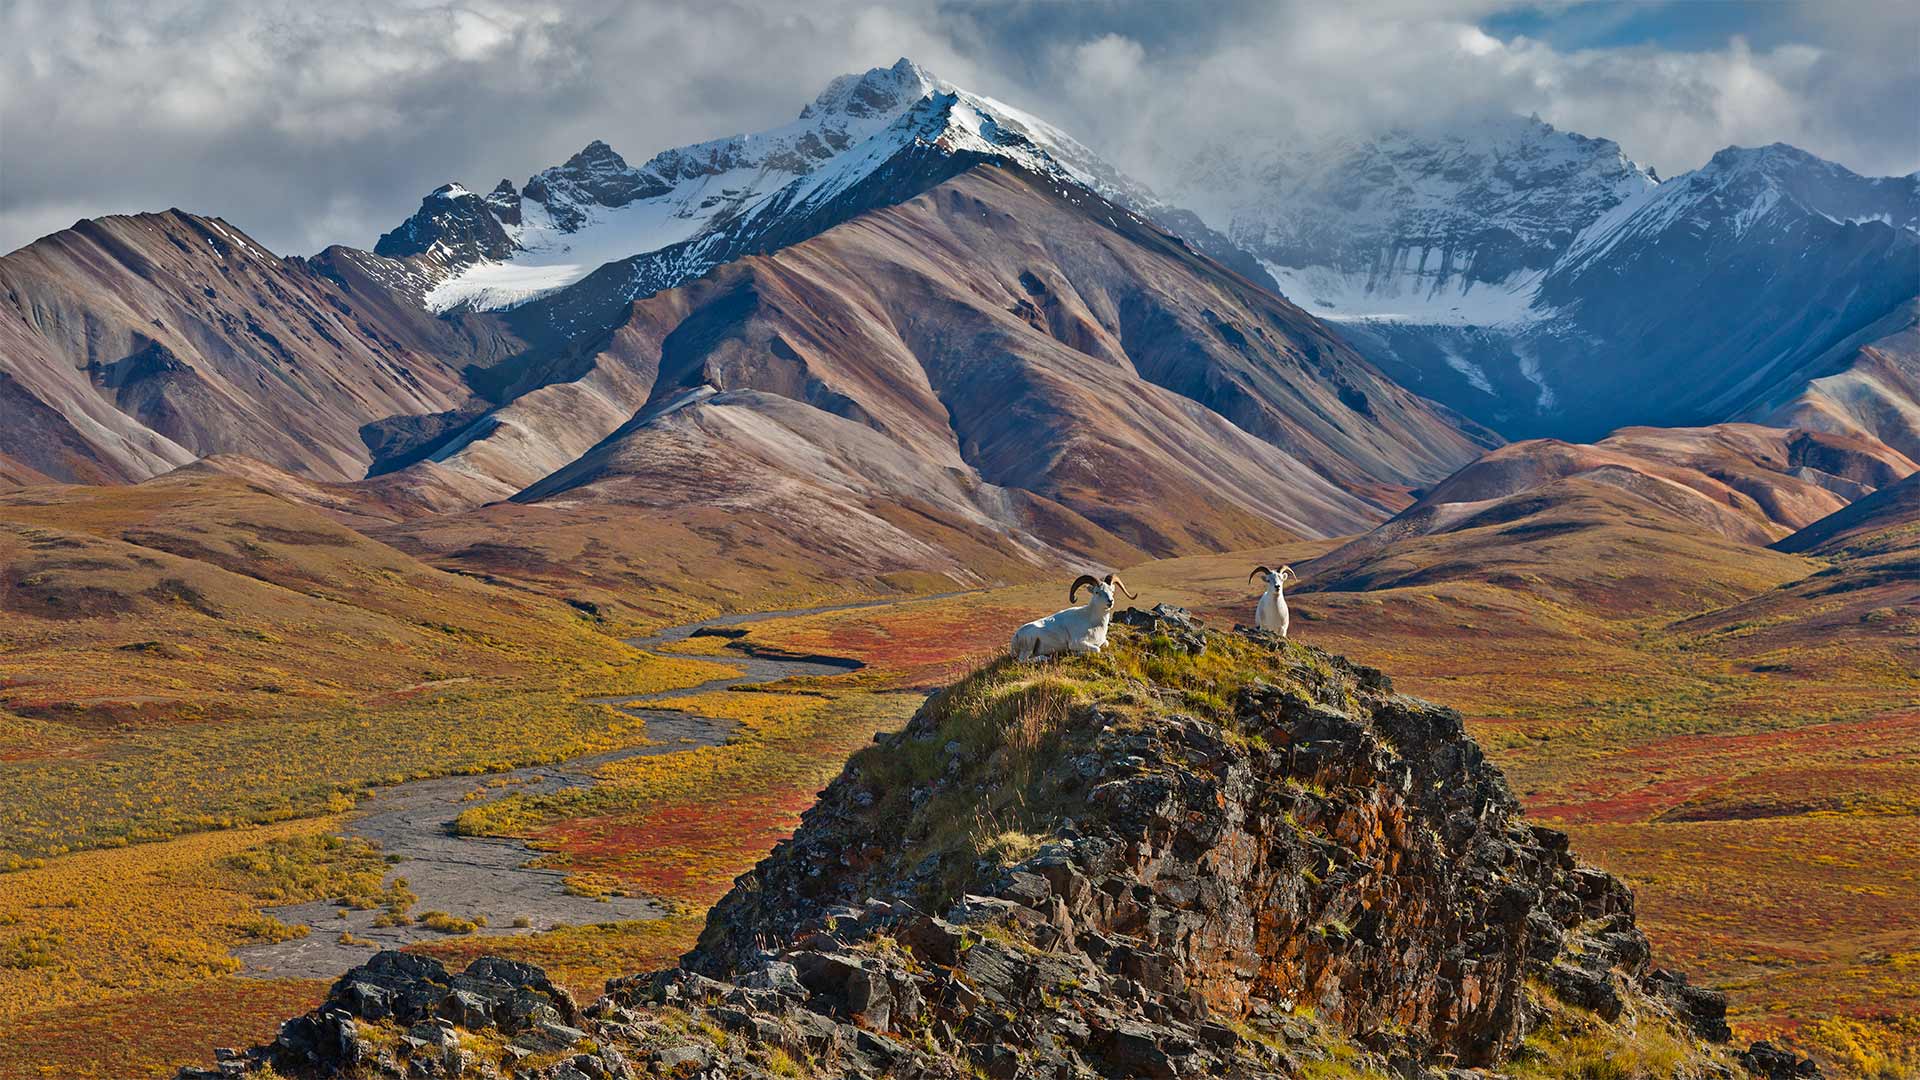 Dall sheep rams at Polychrome Pass, Denali National Park, Alaska - Patrick J. Endres/Getty Images)